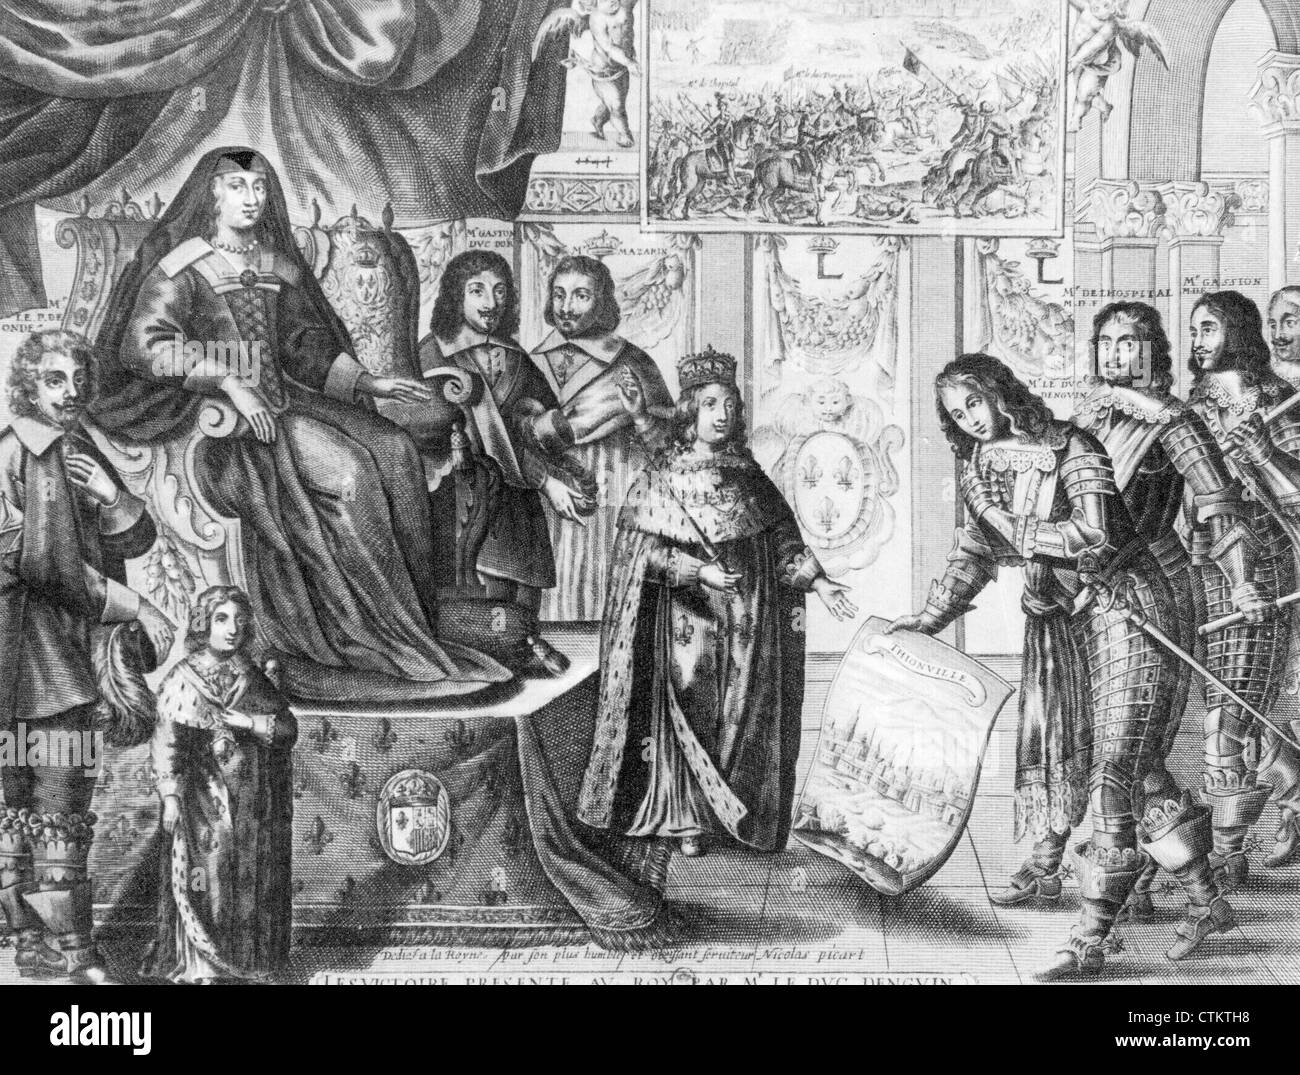 DUC d ' Enghien jungen König Louis XIV seine Siege in Thionville (1639) und Rocroi (1643) vorlegen.  Siehe Beschreibung unten Stockfoto